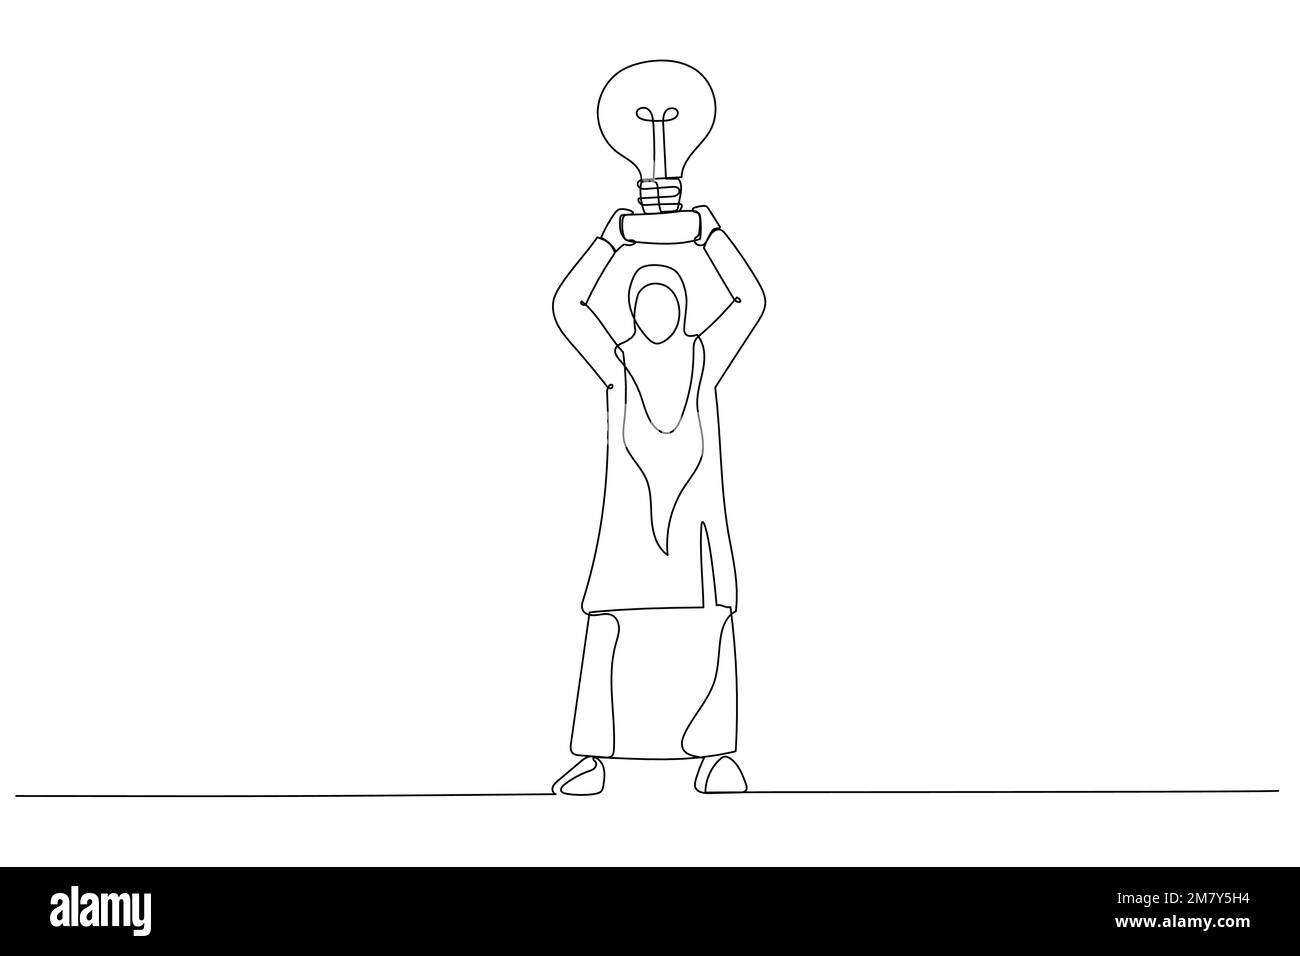 Eine Zeichnung von muslimischen Geschäftsfrauen nimmt einen Trophäenbecher, der wie eine Glühbirne auf dem Sockel aussieht. Einteiliges Design mit durchgehender Strichzeichnung Stock Vektor